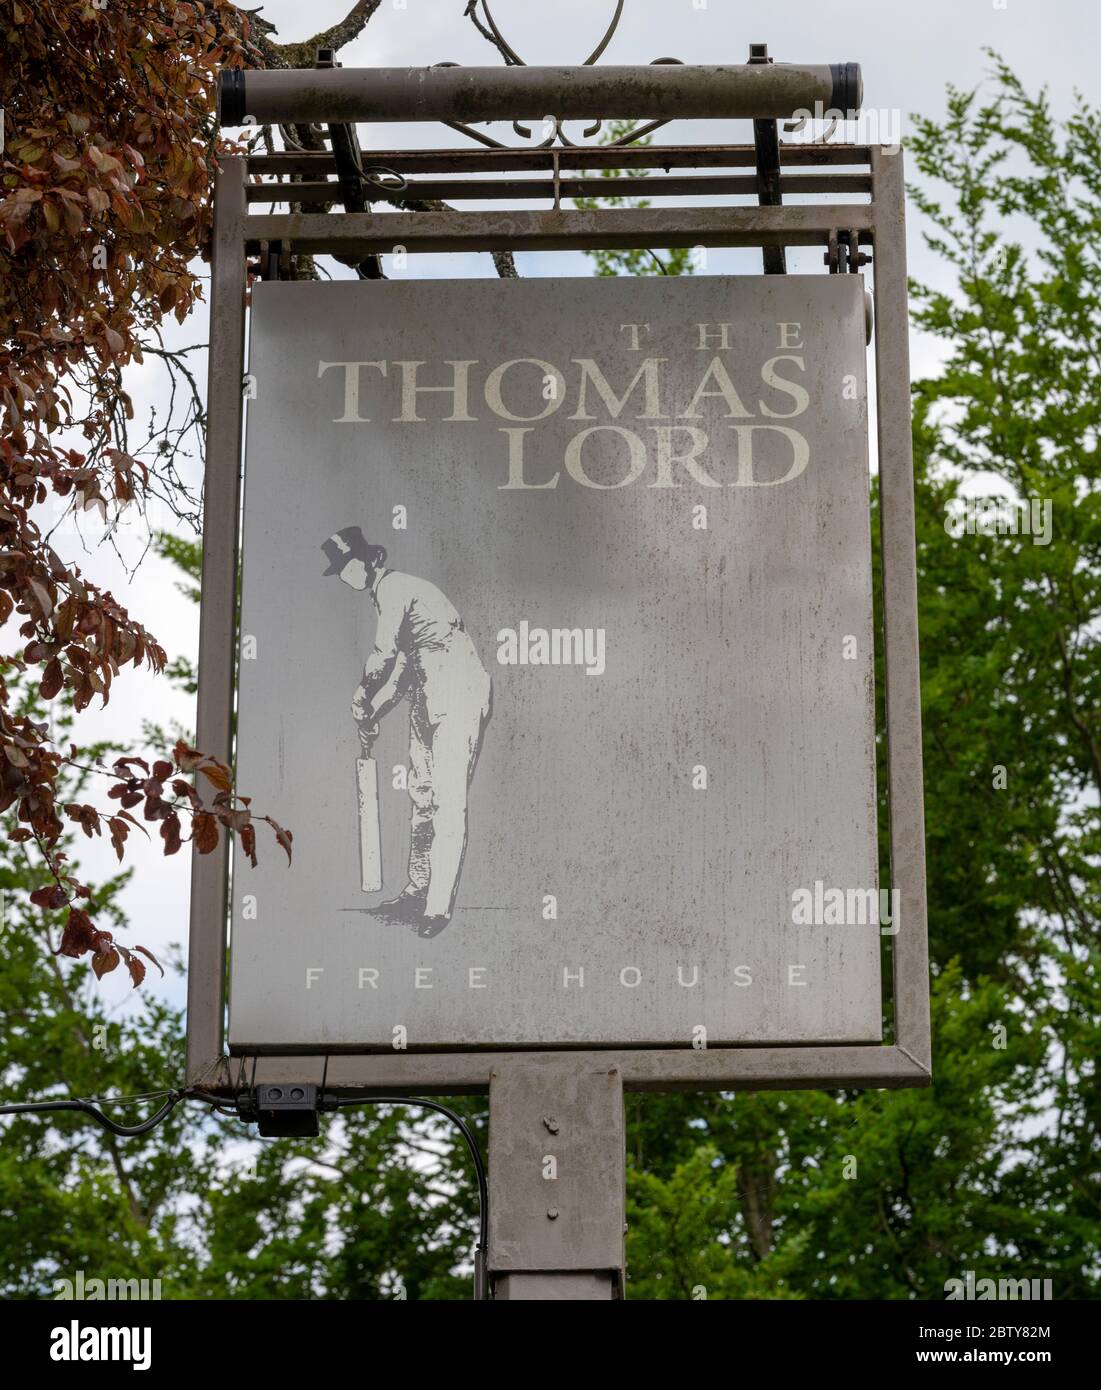 Tradizionale cartello da pub appeso alla casa pubblica Thomas Lord, West Mean, Hampshire, Inghilterra, Regno Unito Foto Stock